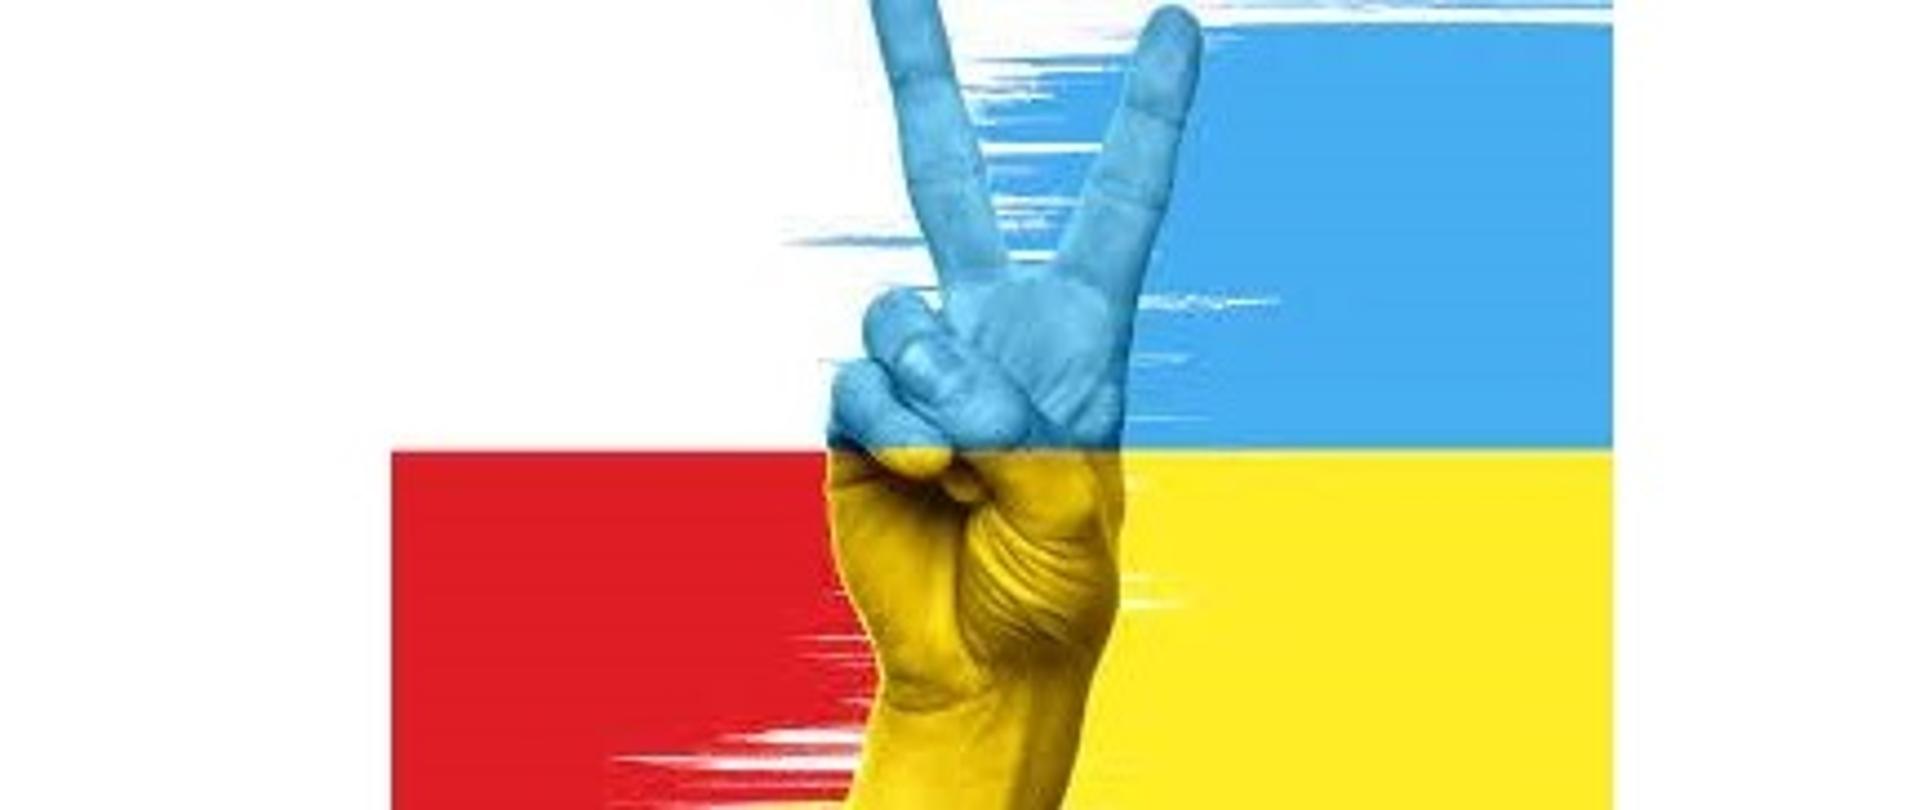 Ręka z dwoma palcami uniesionymi w kształt litery V. Po lewej stronie barwy biało czerwone, po prawej niebiesko żółte